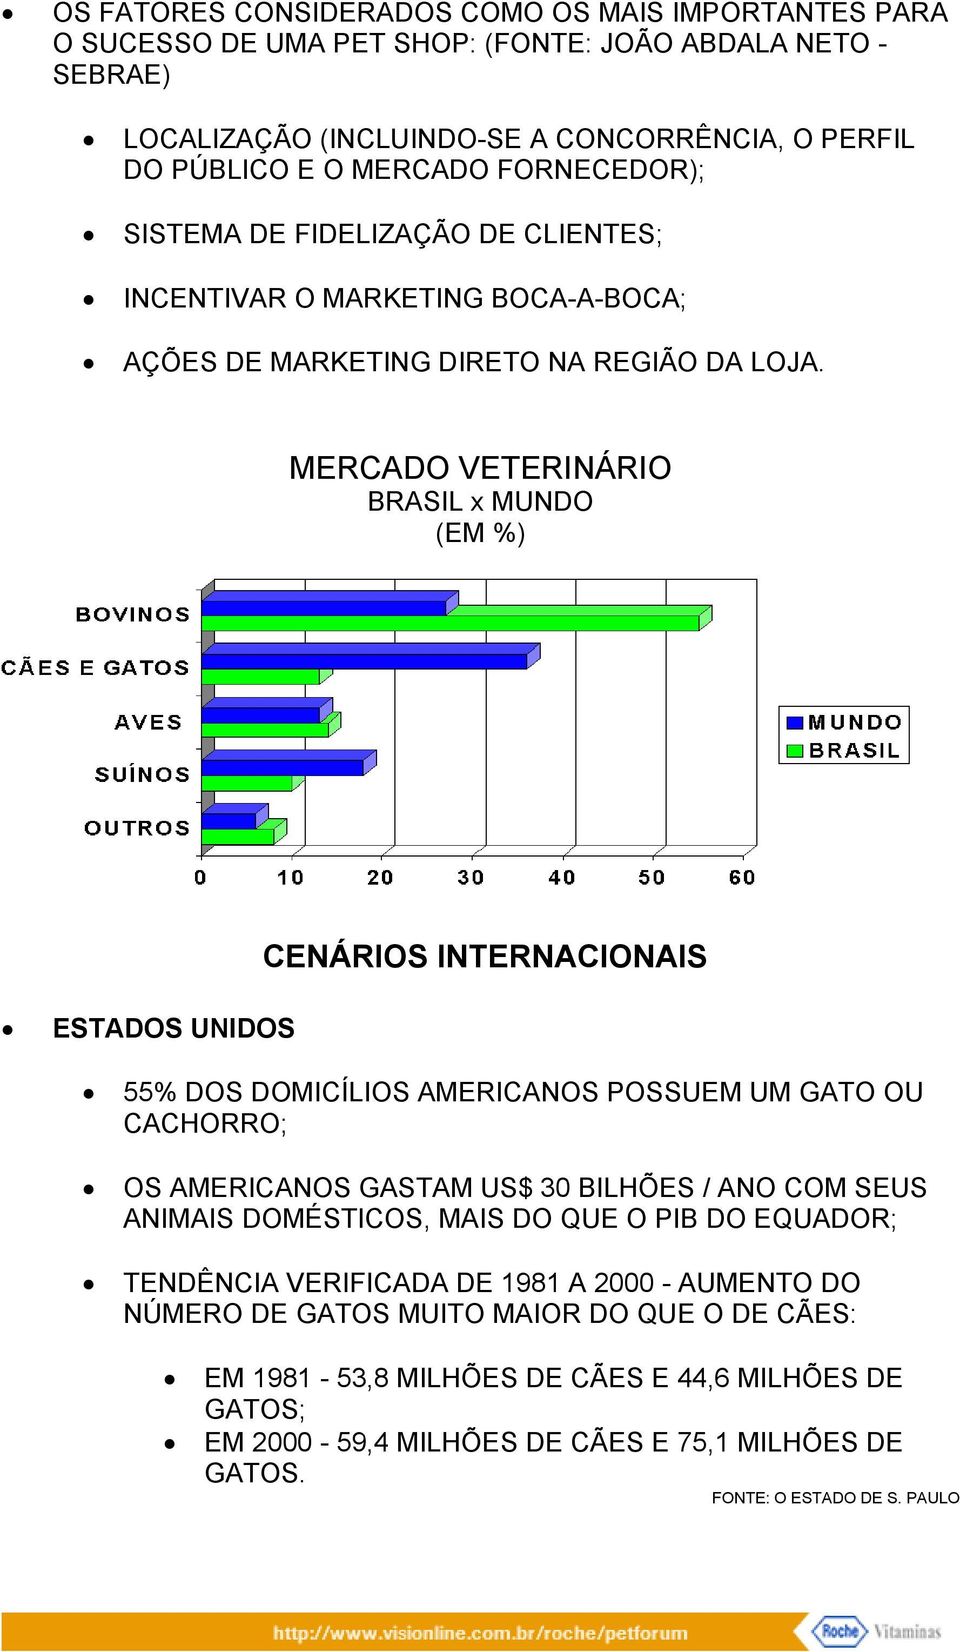 MERCADO VETERINÁRIO BRASIL x MUNDO (EM %) ESTADOS UNIDOS CENÁRIOS INTERNACIONAIS 55% DOS DOMICÍLIOS AMERICANOS POSSUEM UM GATO OU CACHORRO; OS AMERICANOS GASTAM US$ 30 BILHÕES / ANO COM SEUS